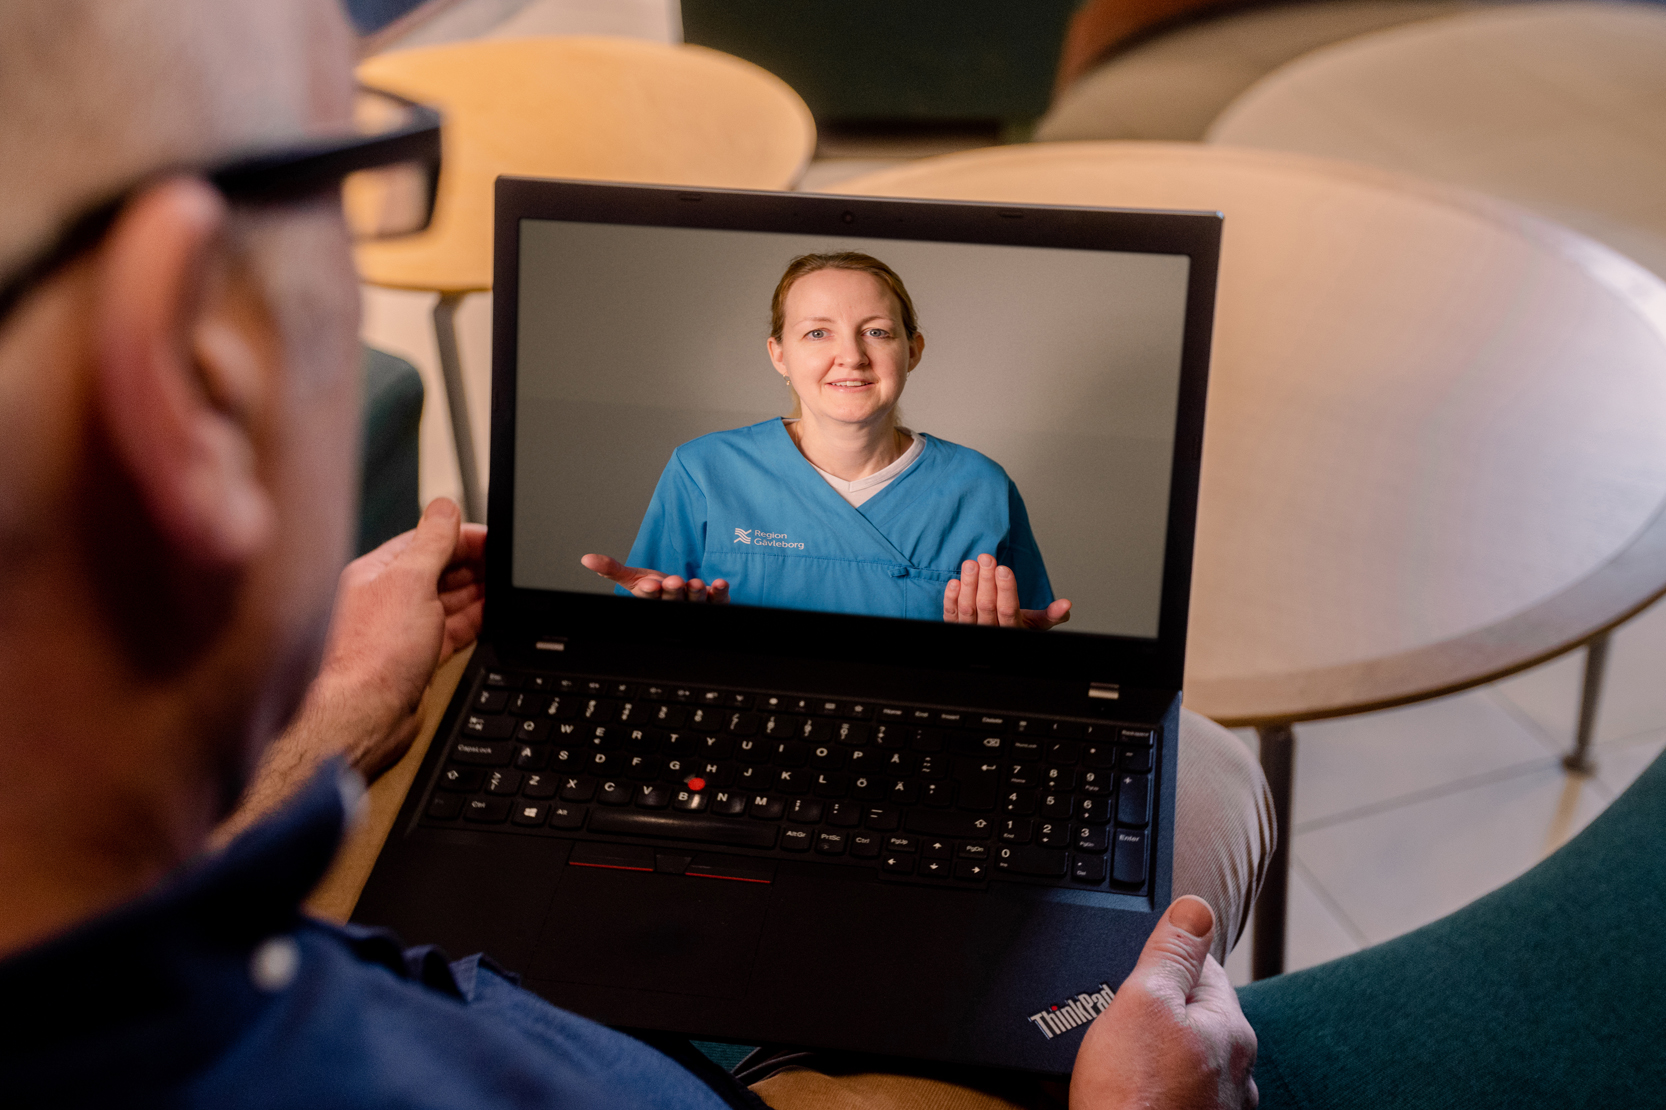 Person sitter med dator i knä och samtalar med vårdpersonal genom datorn